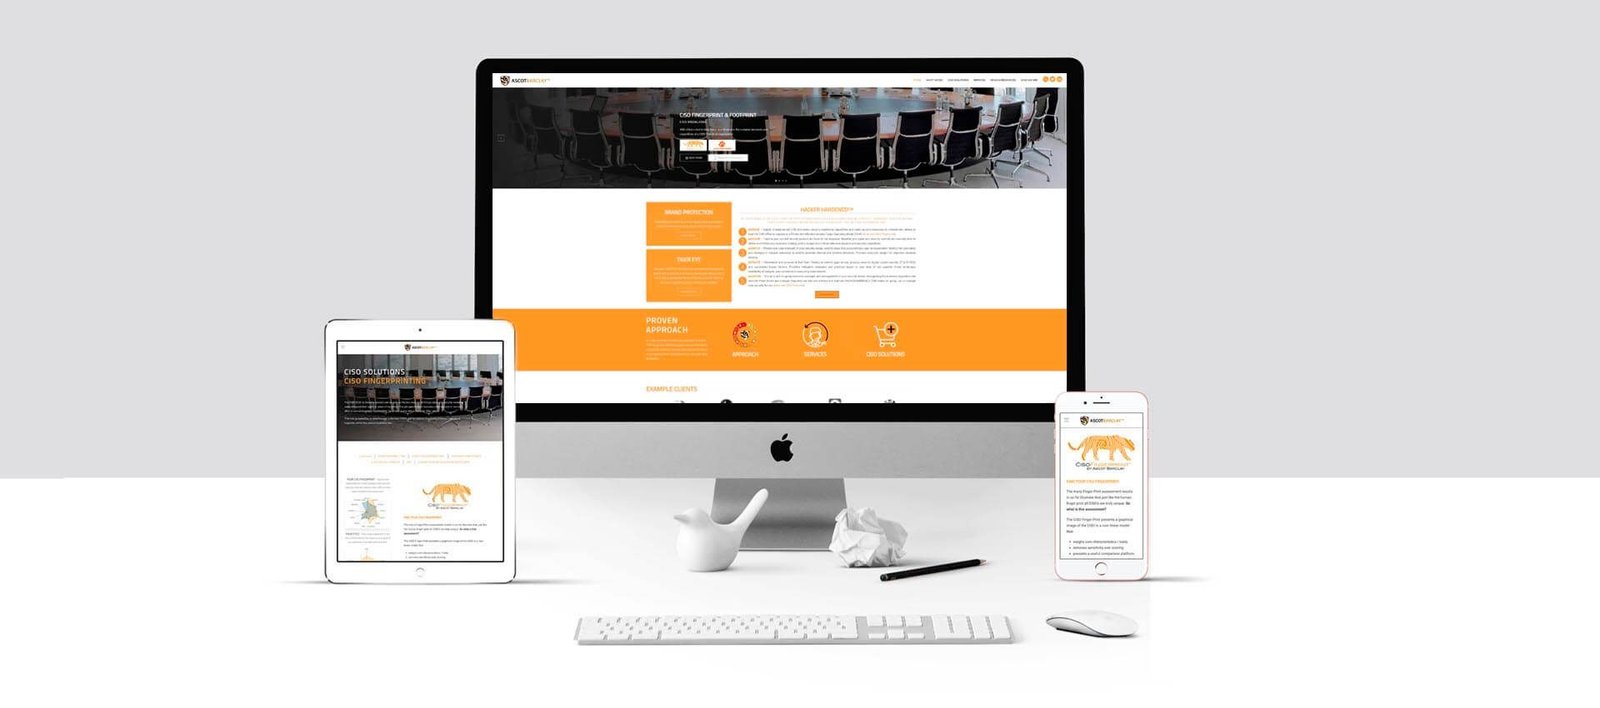 Web design for AscotBarclay